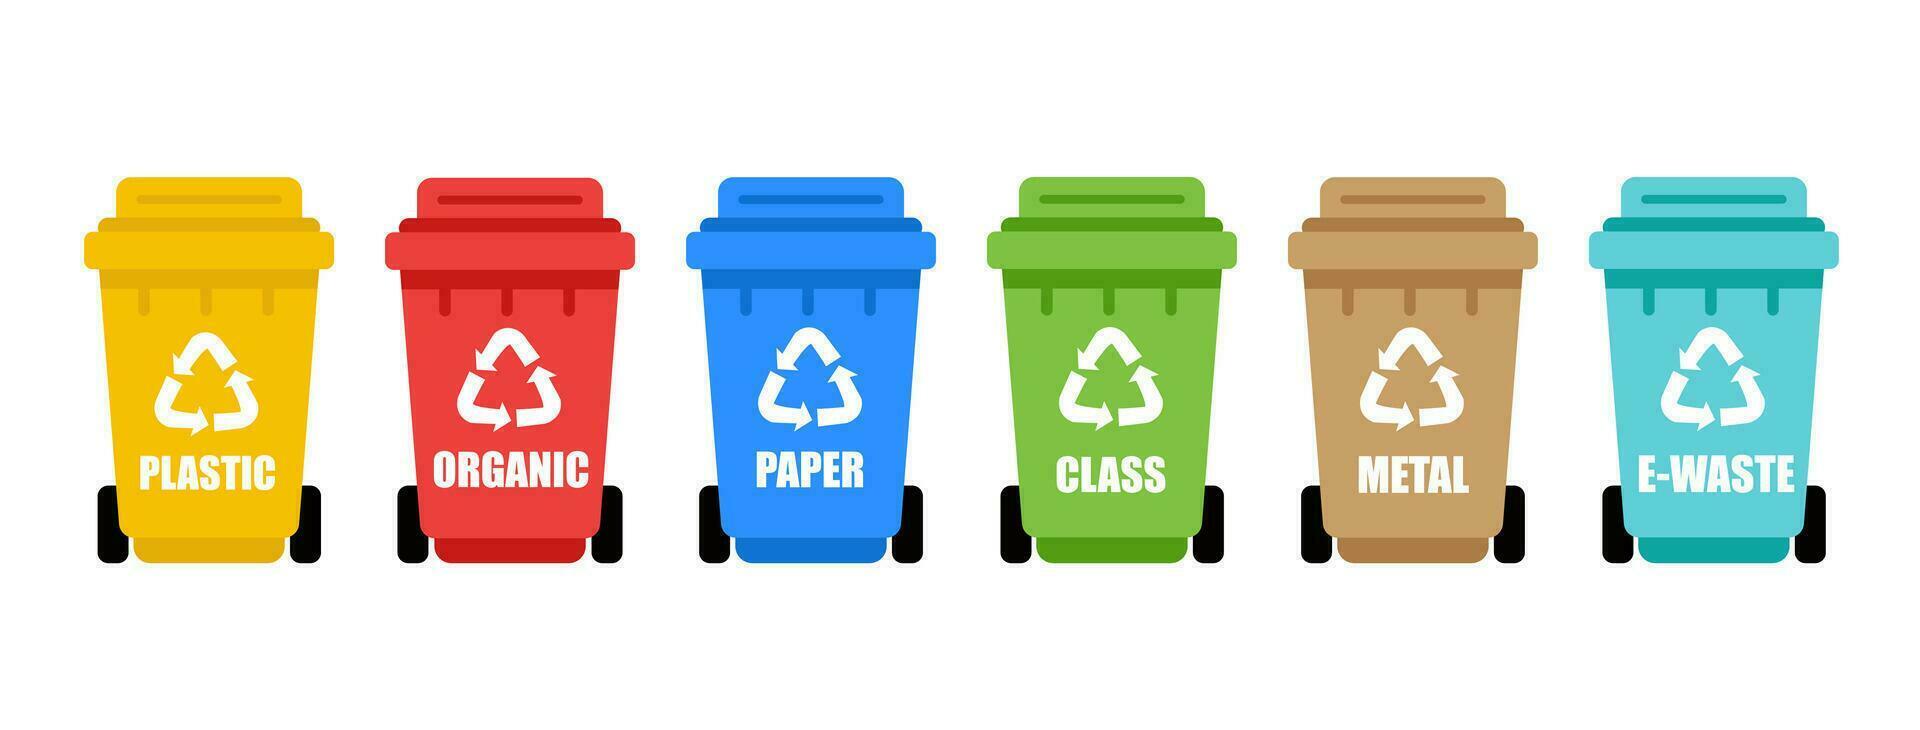 vistoso reciclar el plastico papeleras varios tipos de residuos orgánicos, el plastico, metal, papel, vaso, electrónico desperdiciar. separación de residuos en basura latas para reciclaje vector